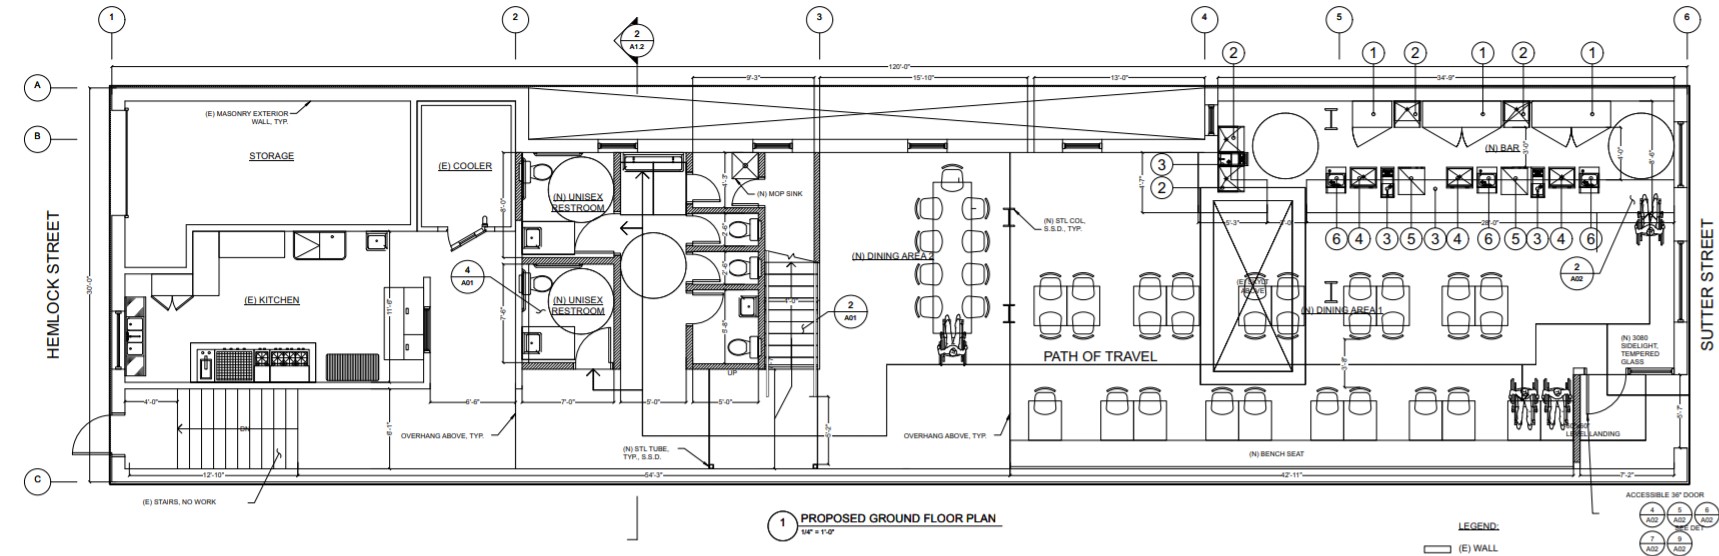 1217 Sutter Street Ground Floor Plan